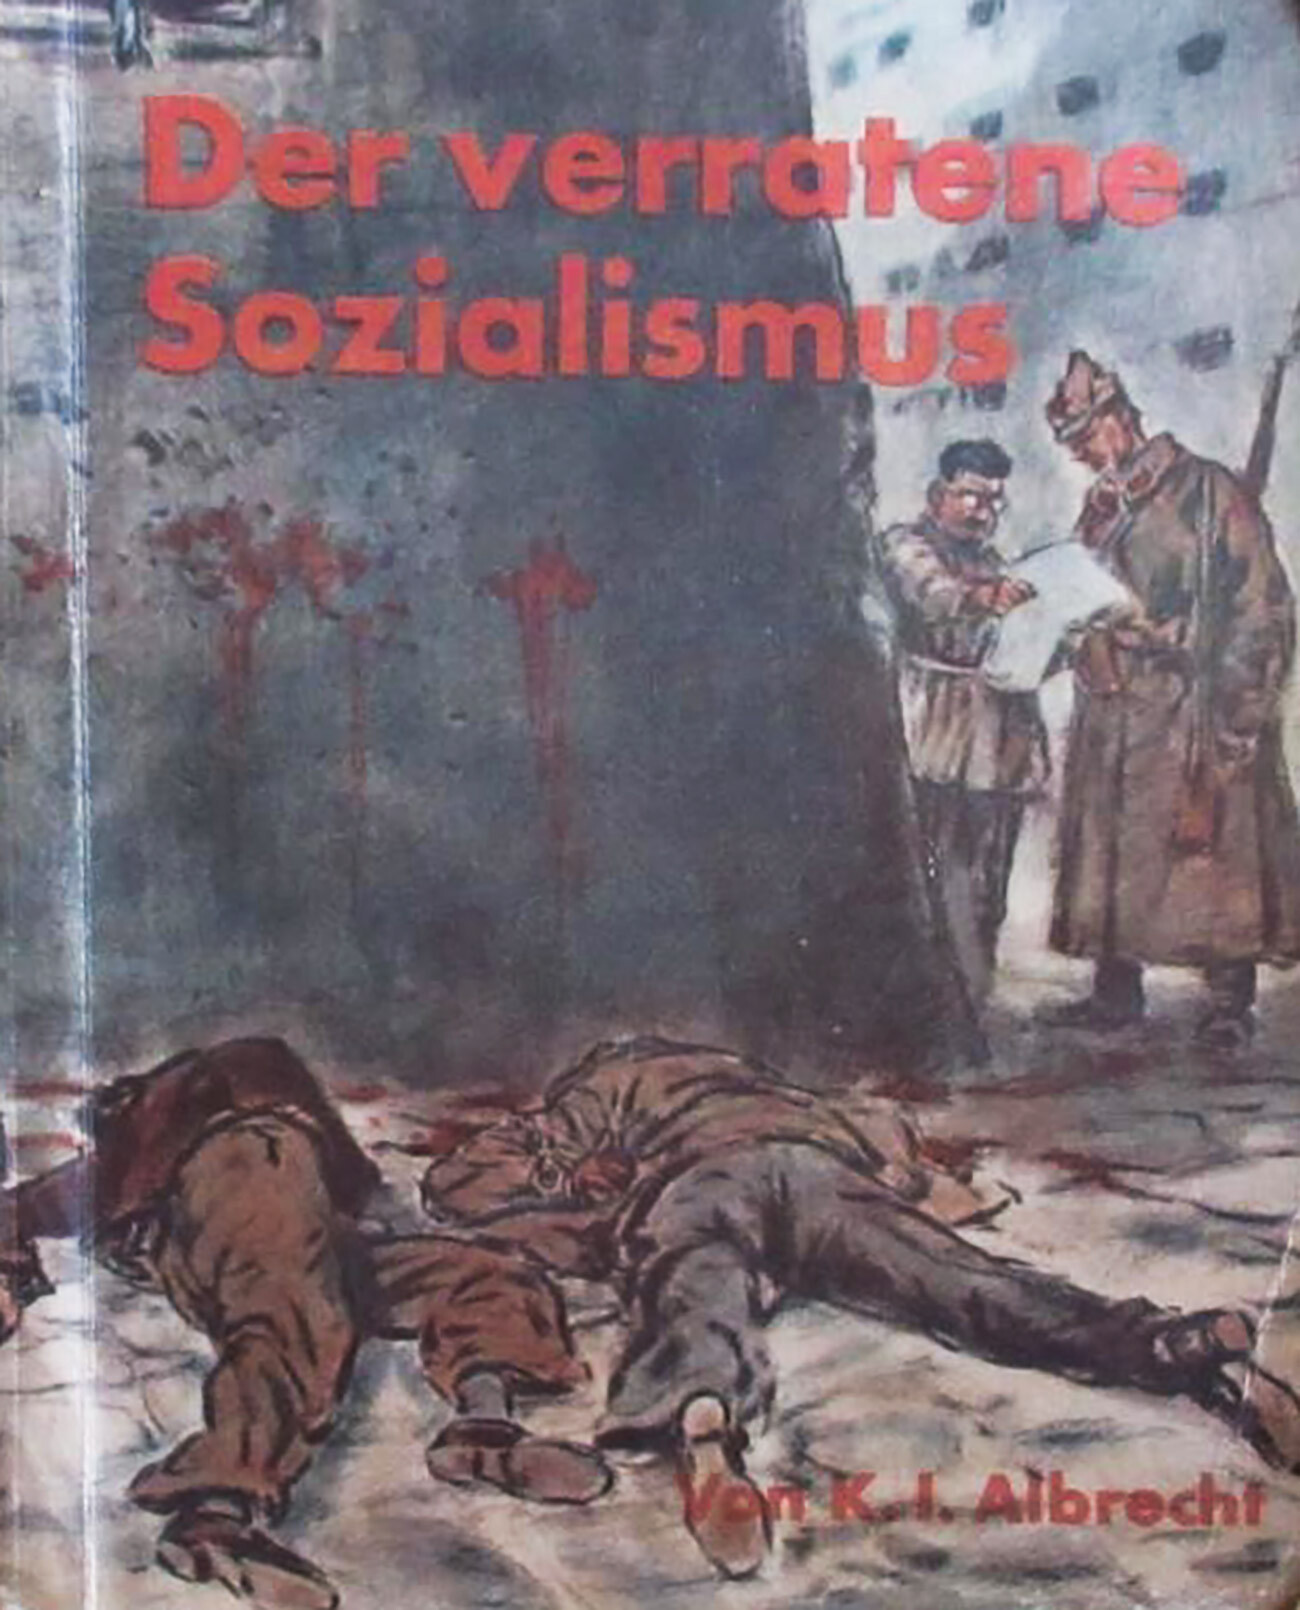 Portada del libro autobiográfico de Albrecht, utilizado por la propaganda nazi.